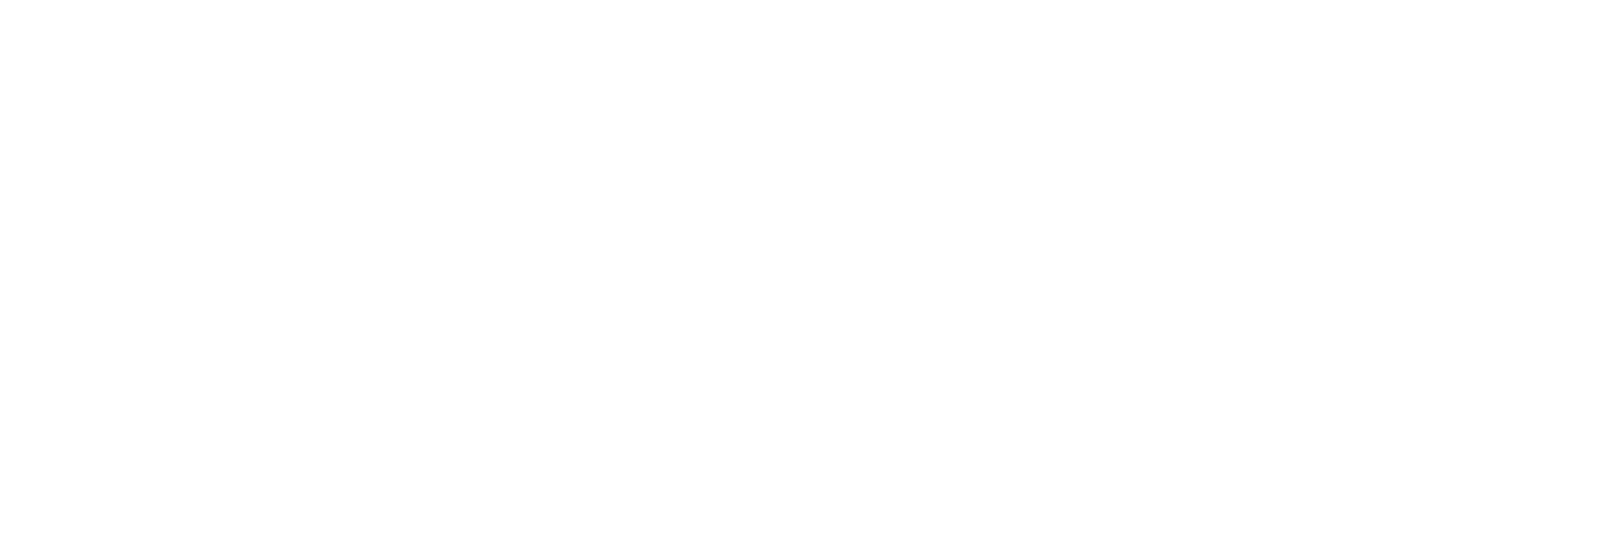 AMR Letters Transparent Background | JF WebDesign